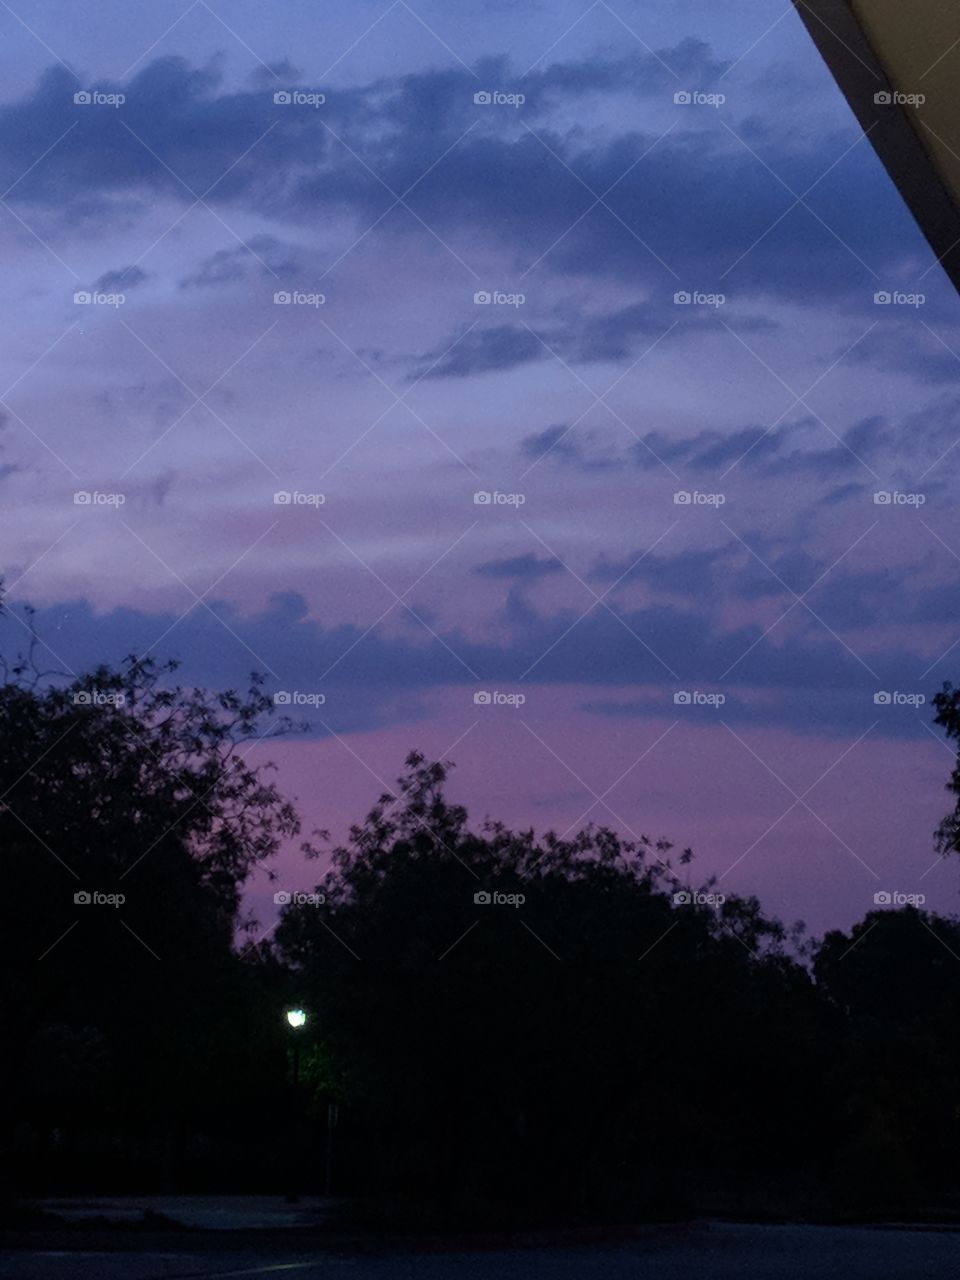 beautiful purple sky